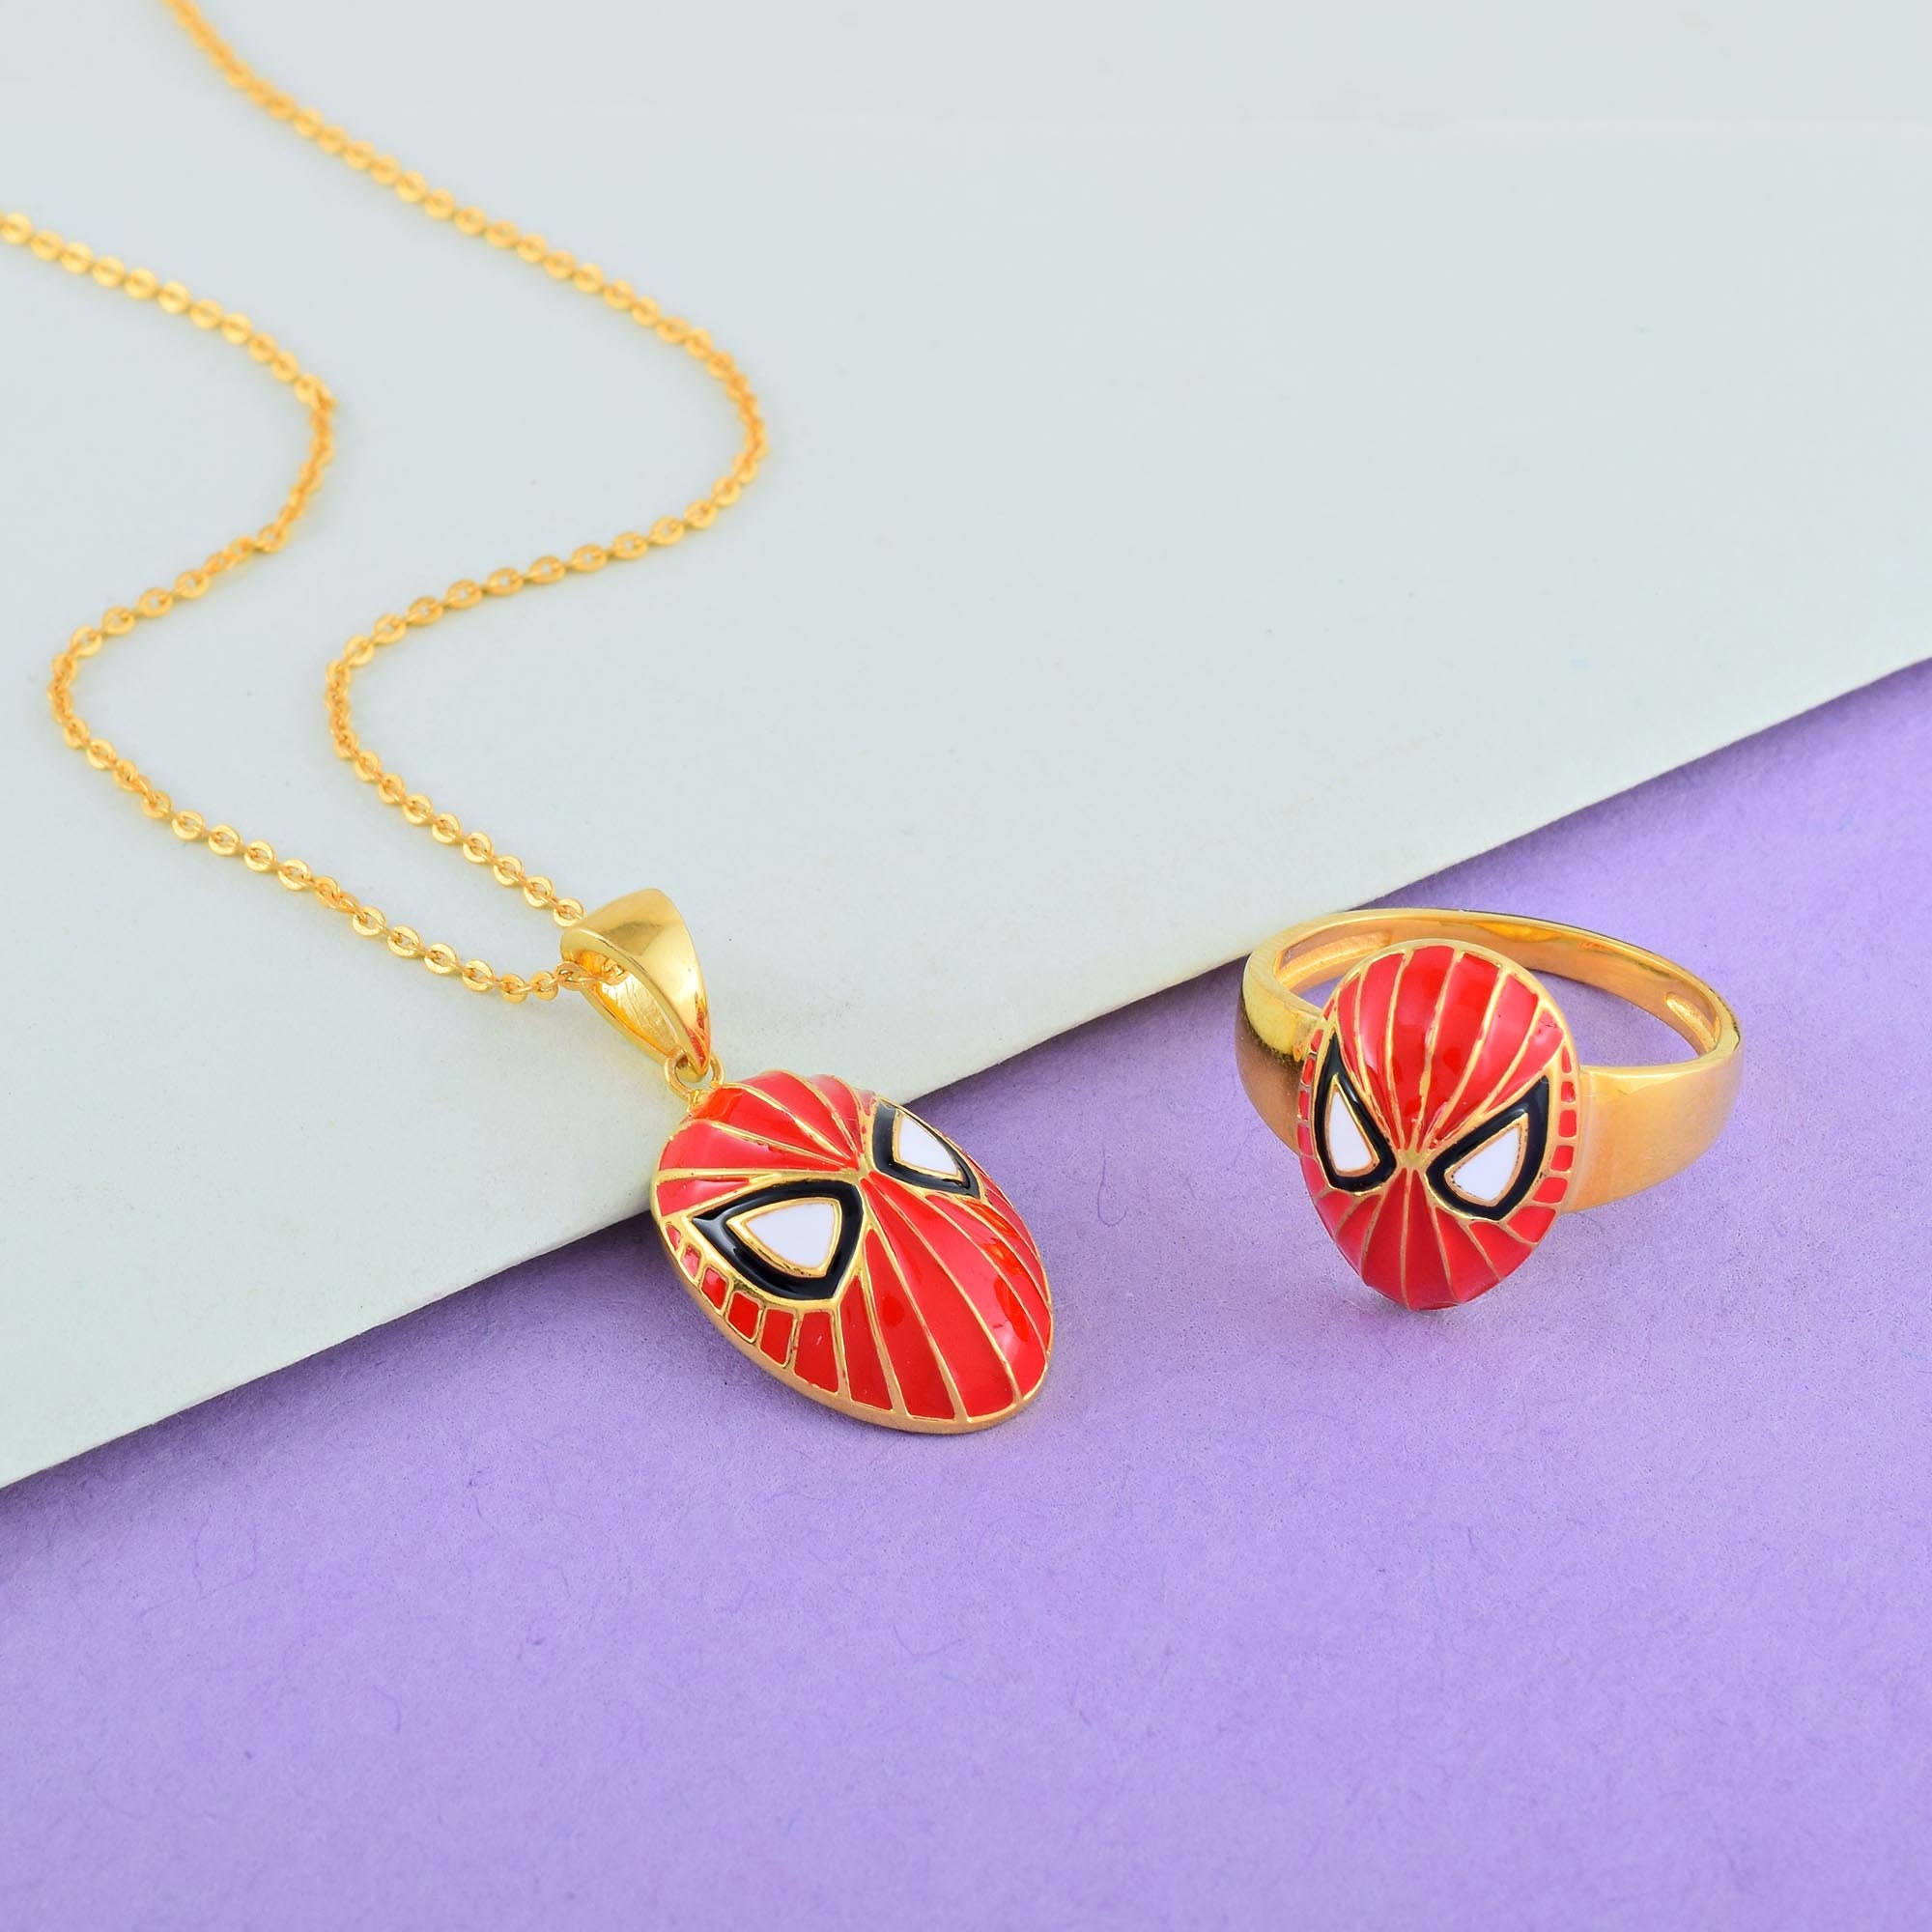 Spider Man Necklace | eBay